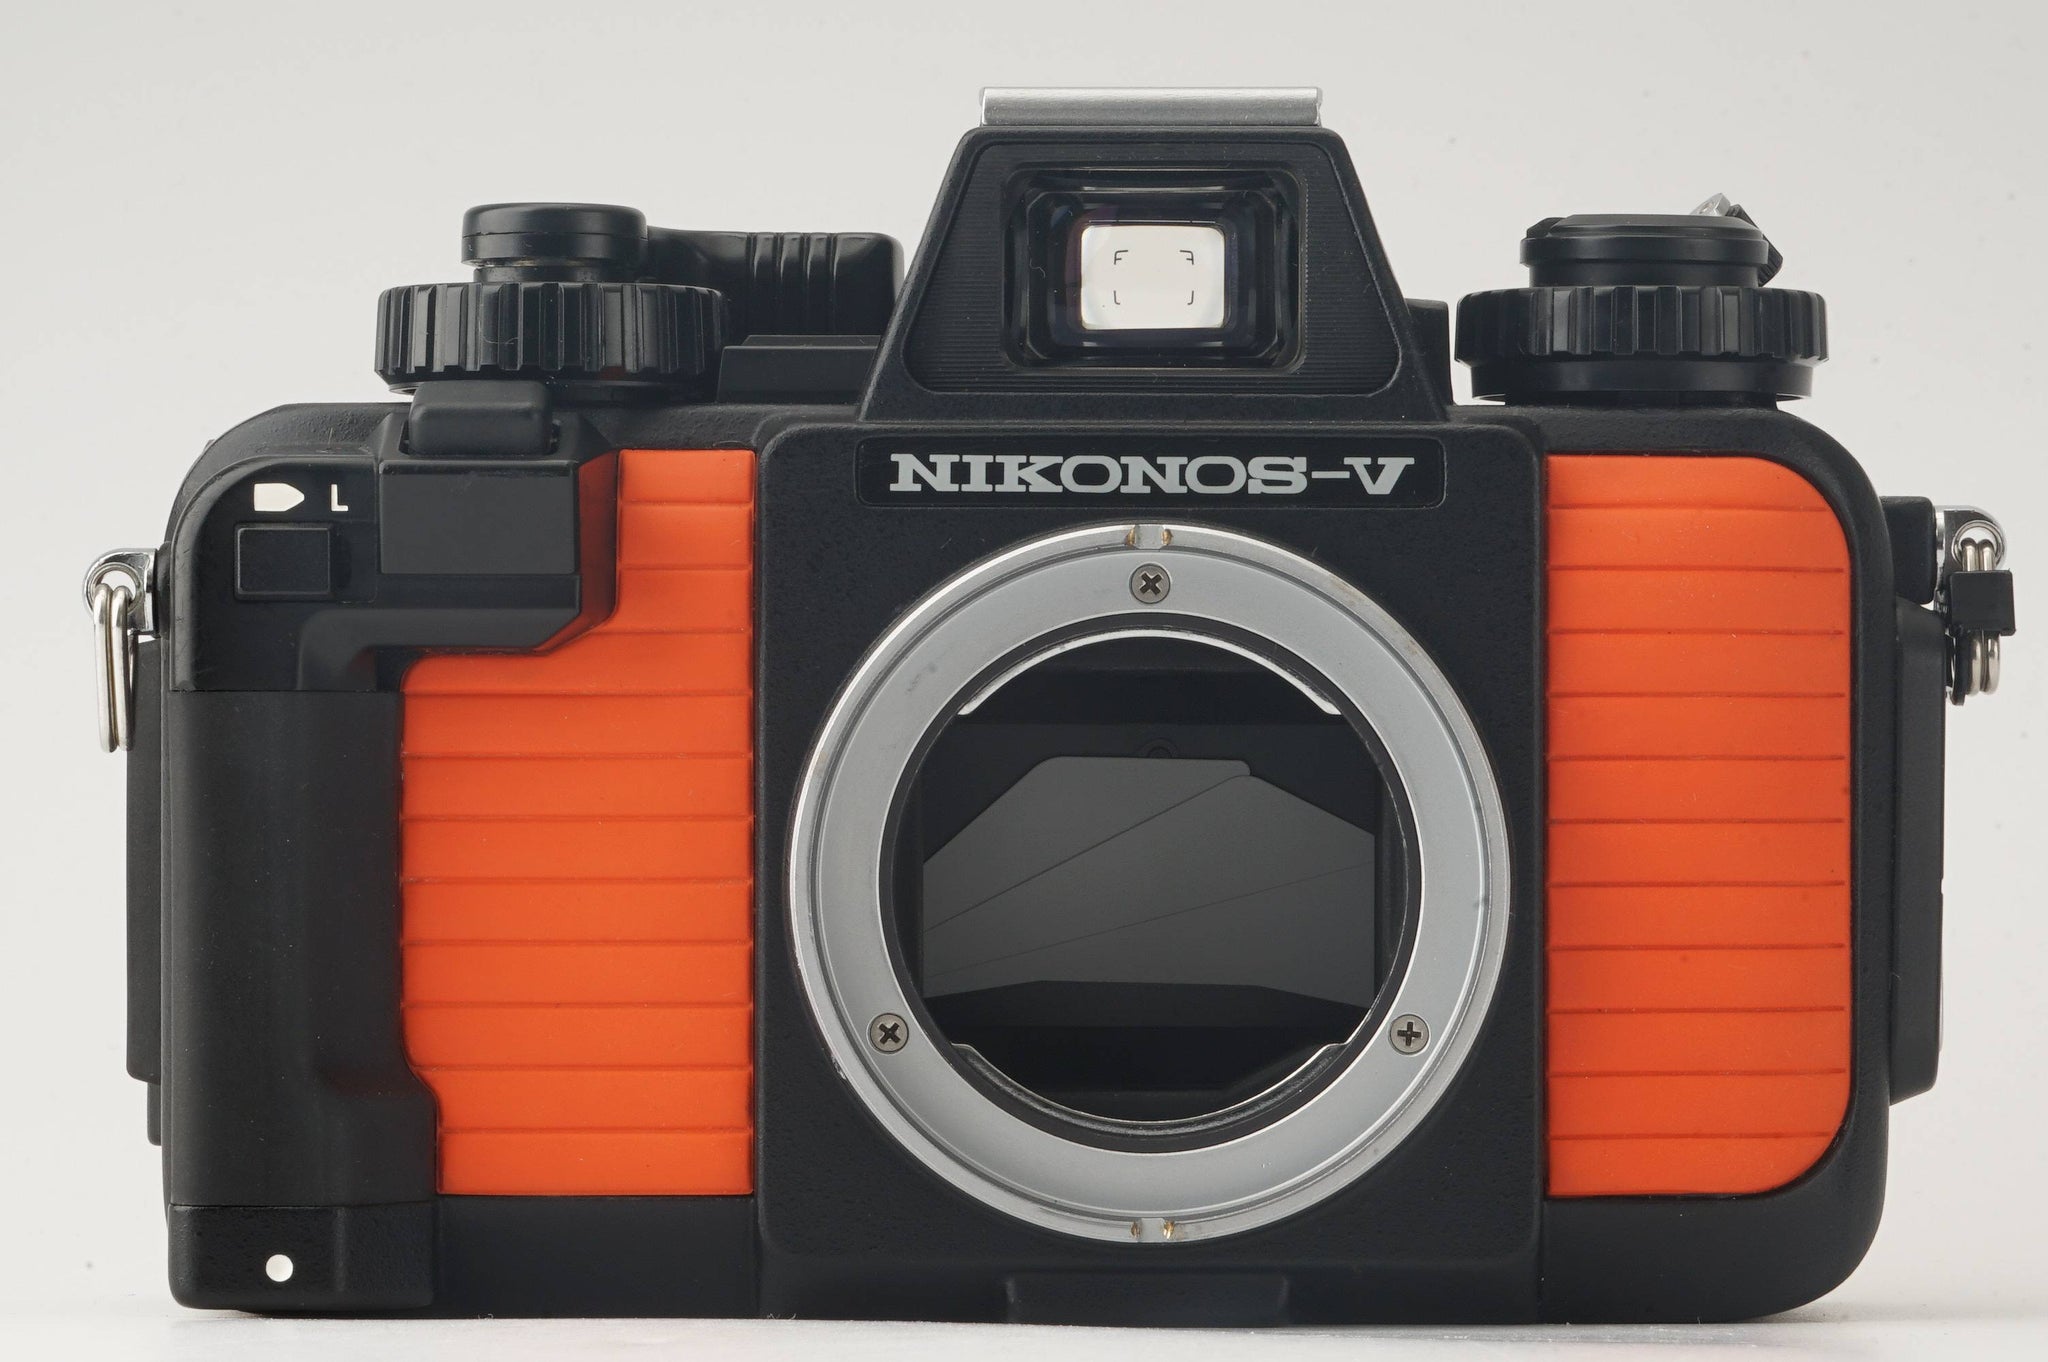 ニコン Nikon NIKONOS-V 35mm 水中フィルムカメラ オレンジ – Natural